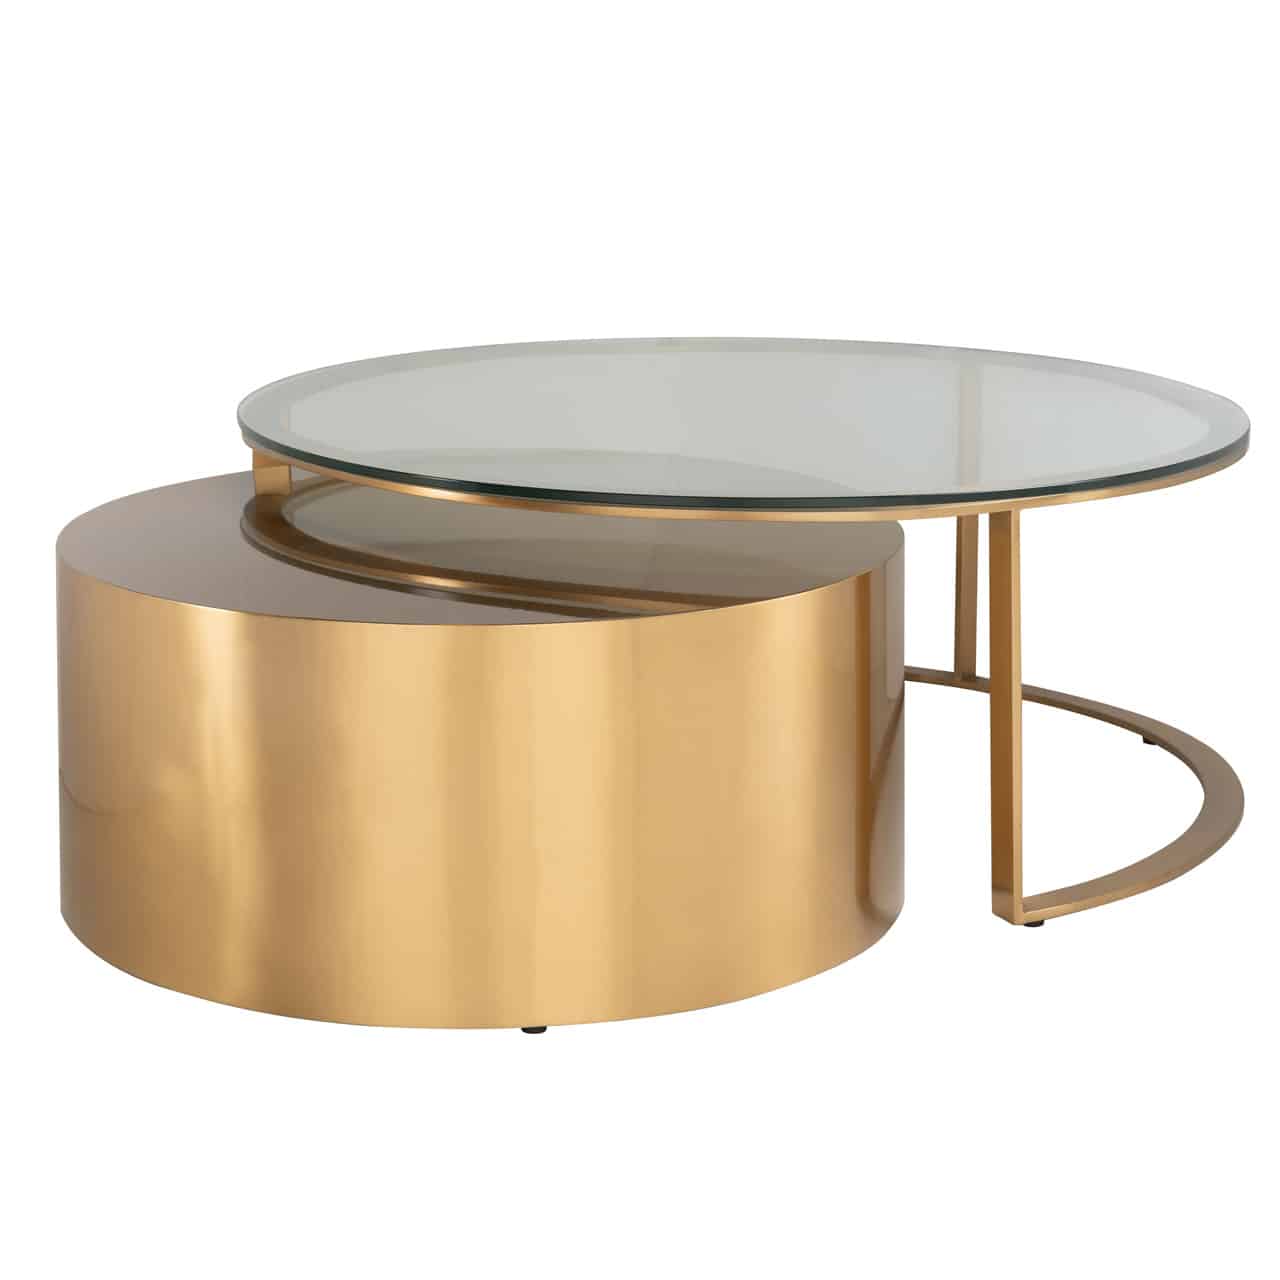 Couchtisch Set im Design einer goldenen Trommel und einem goldenen, auf einer Seite offenen Gestell, darauf eine runde Glasplatte;  der trommelförmige Tisch ist zum Großteil unter den Glastisch geschoben.